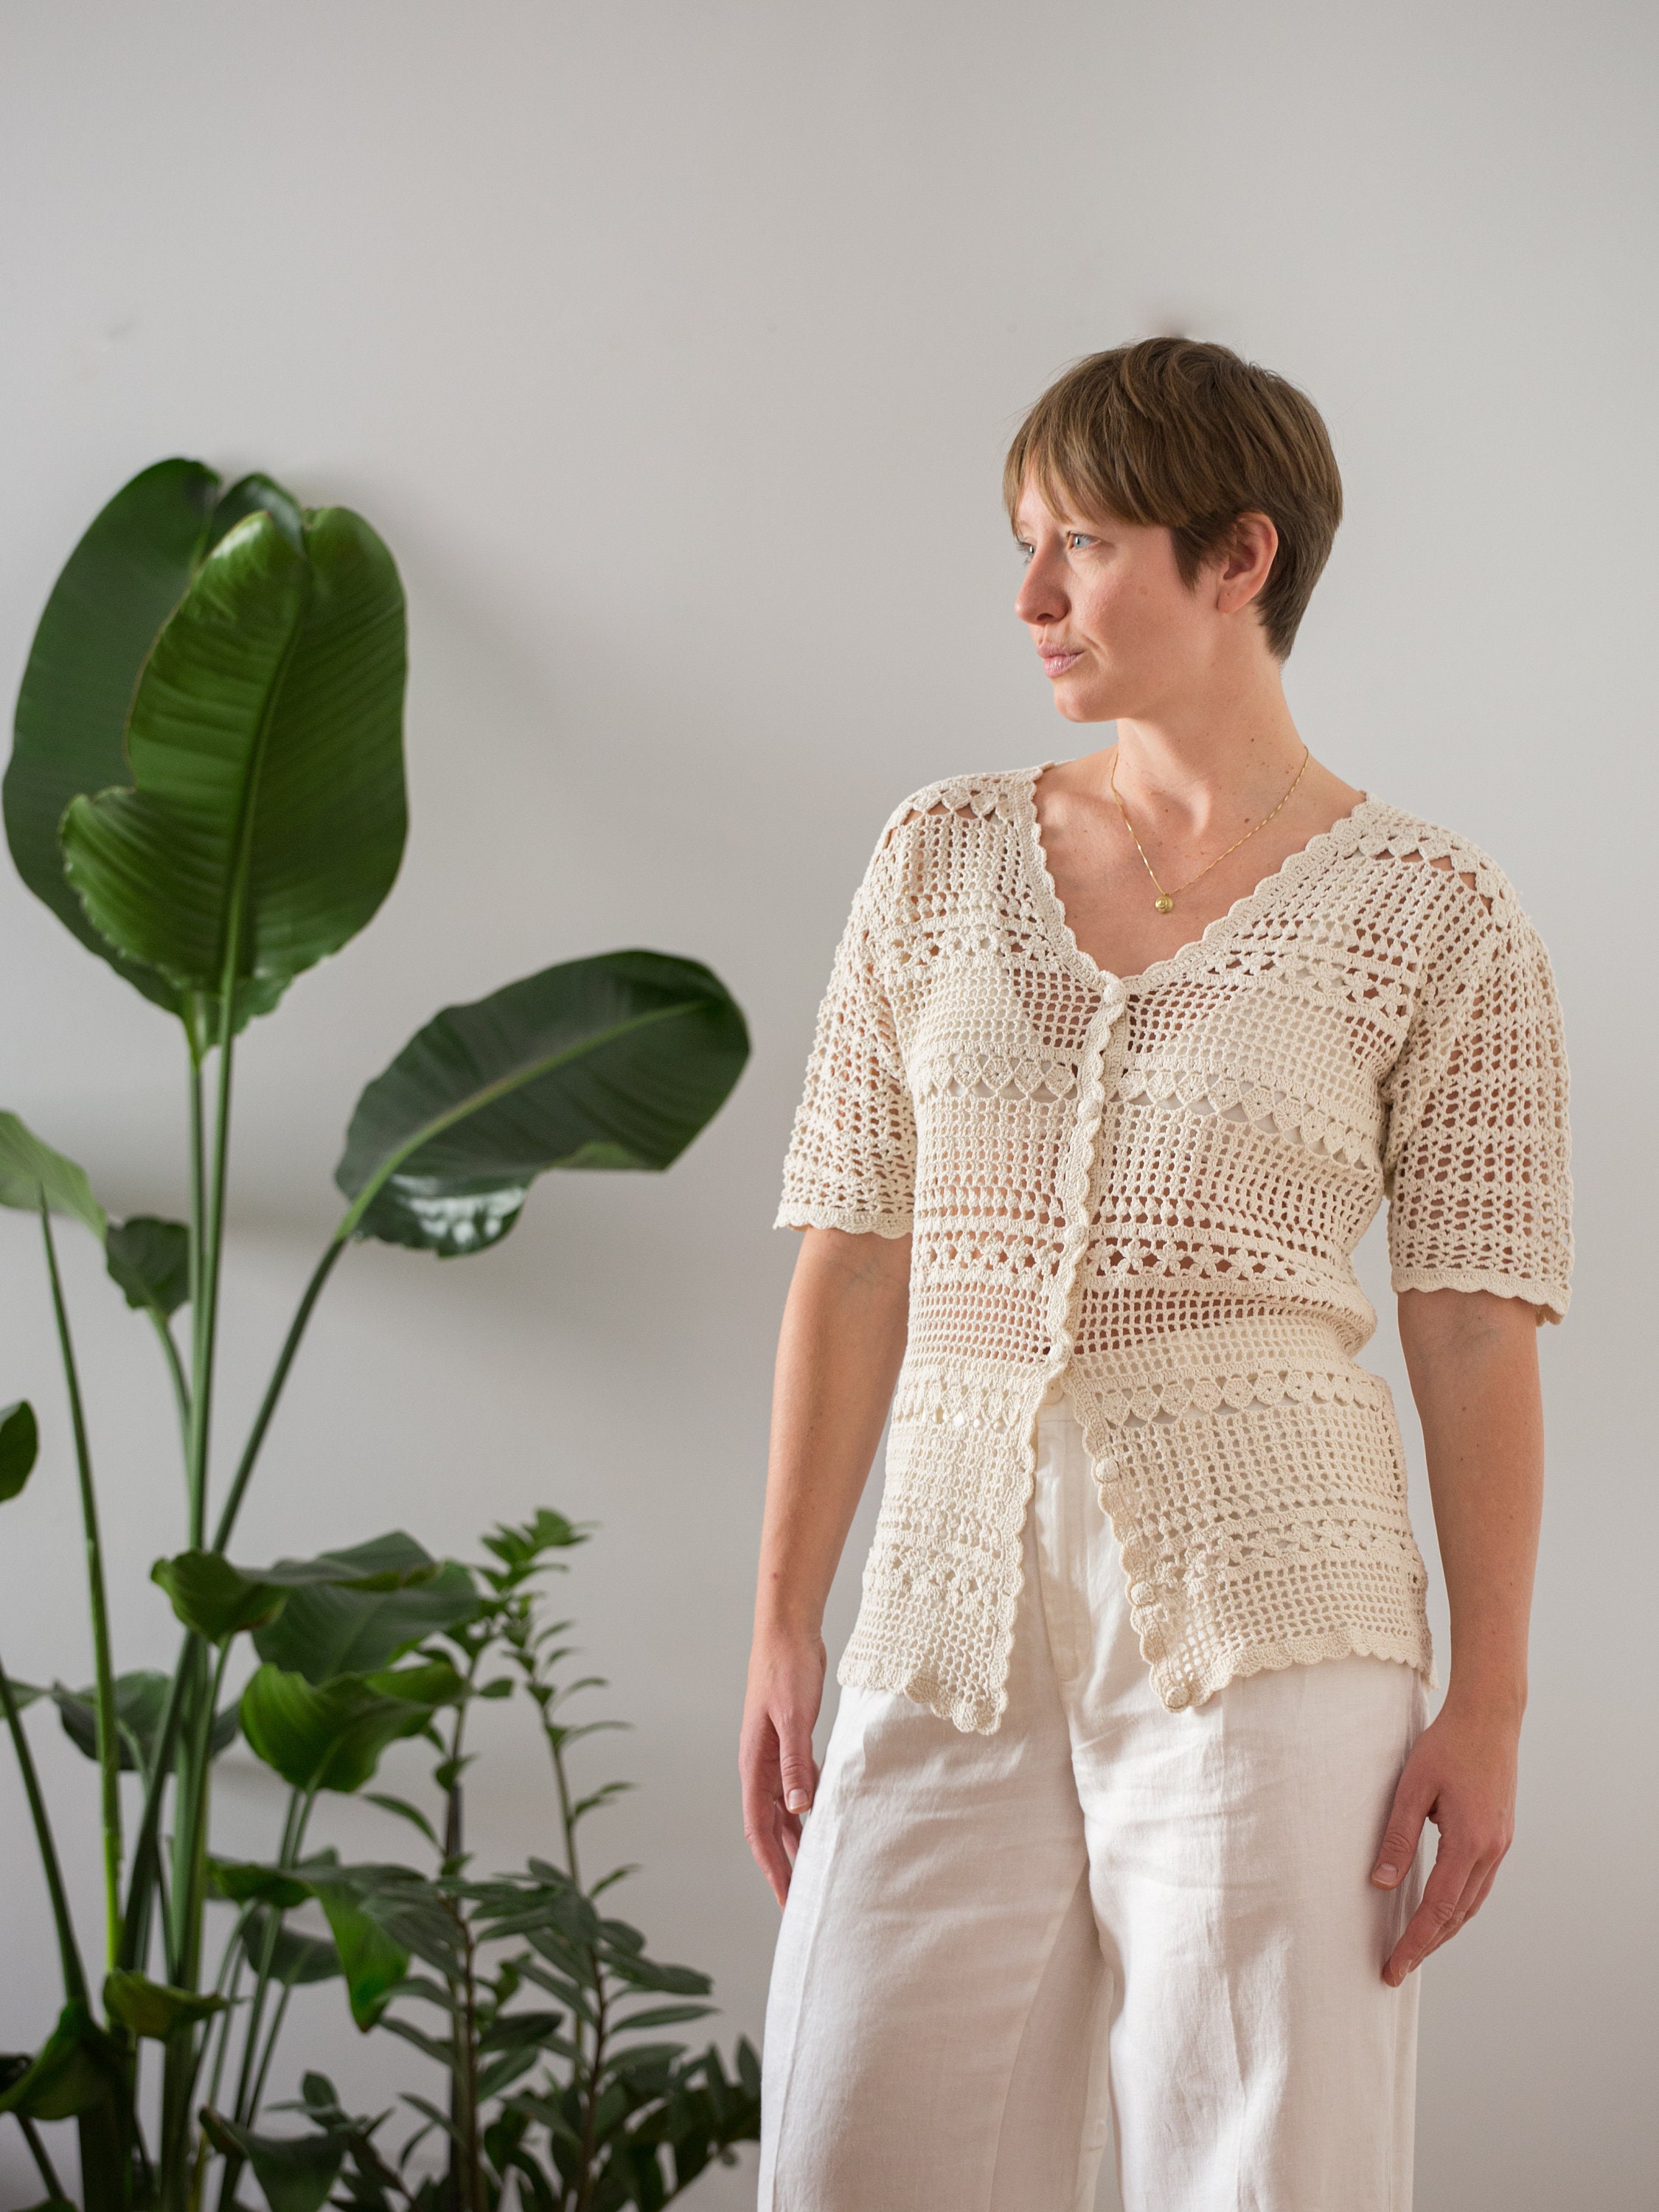 Vintage Open Weave Cotton Crochet Top in Beige for Women Free Size